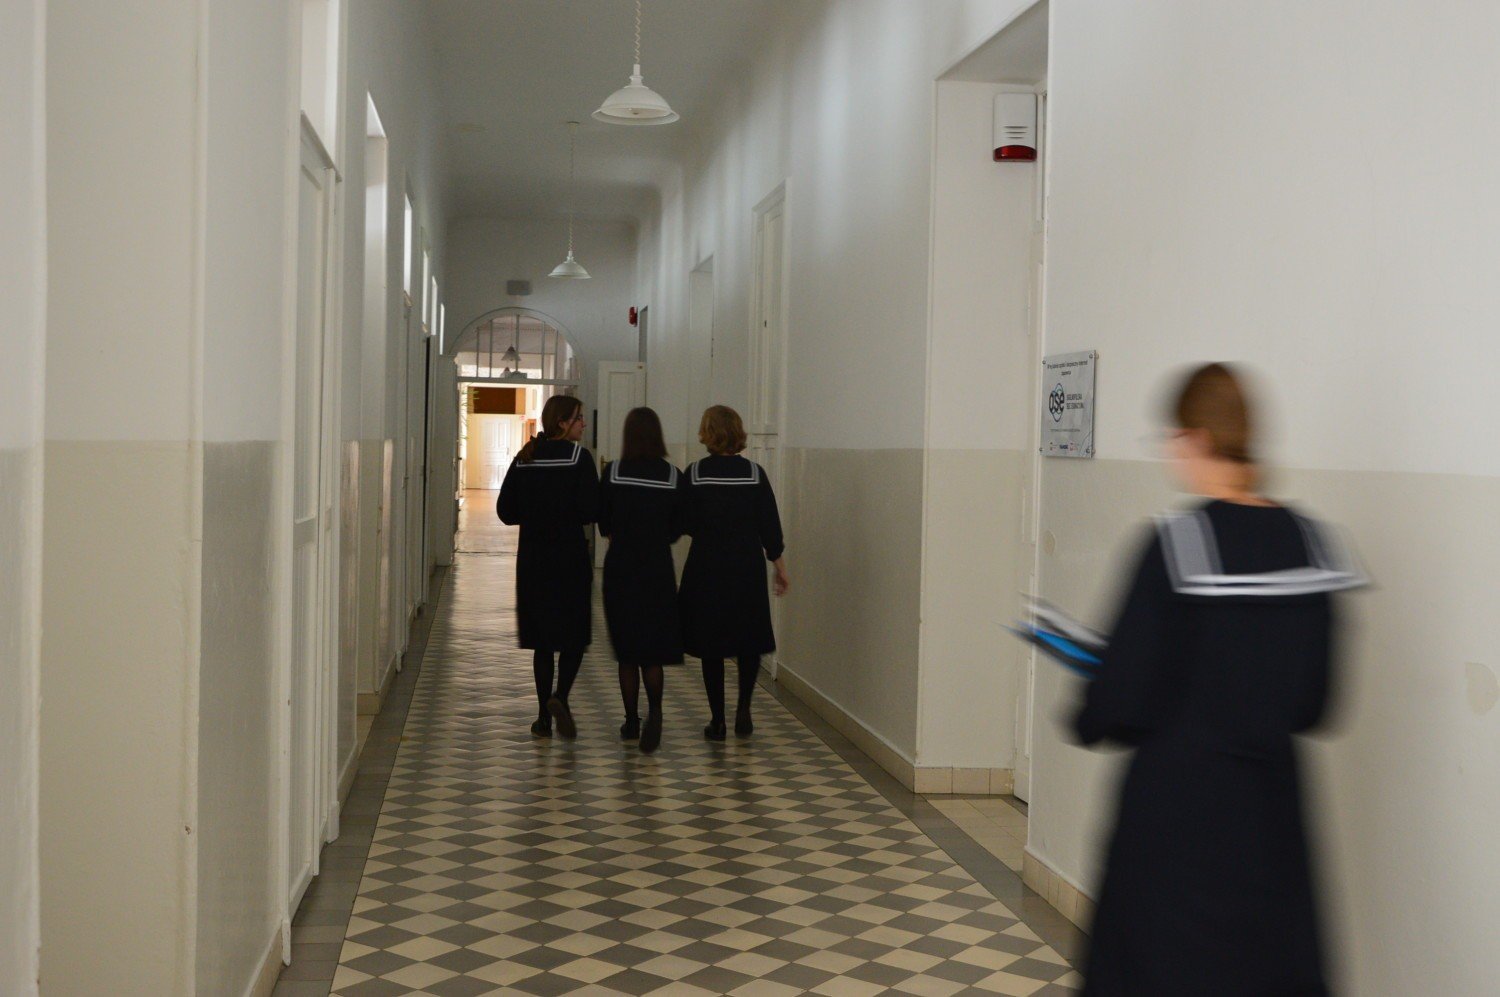 Rygorystyczna żeńska szkoła zakonna w Szymanowie po raz pierwszy ogłasza  nabór dla chłopców | Skierniewice Nasze Miasto